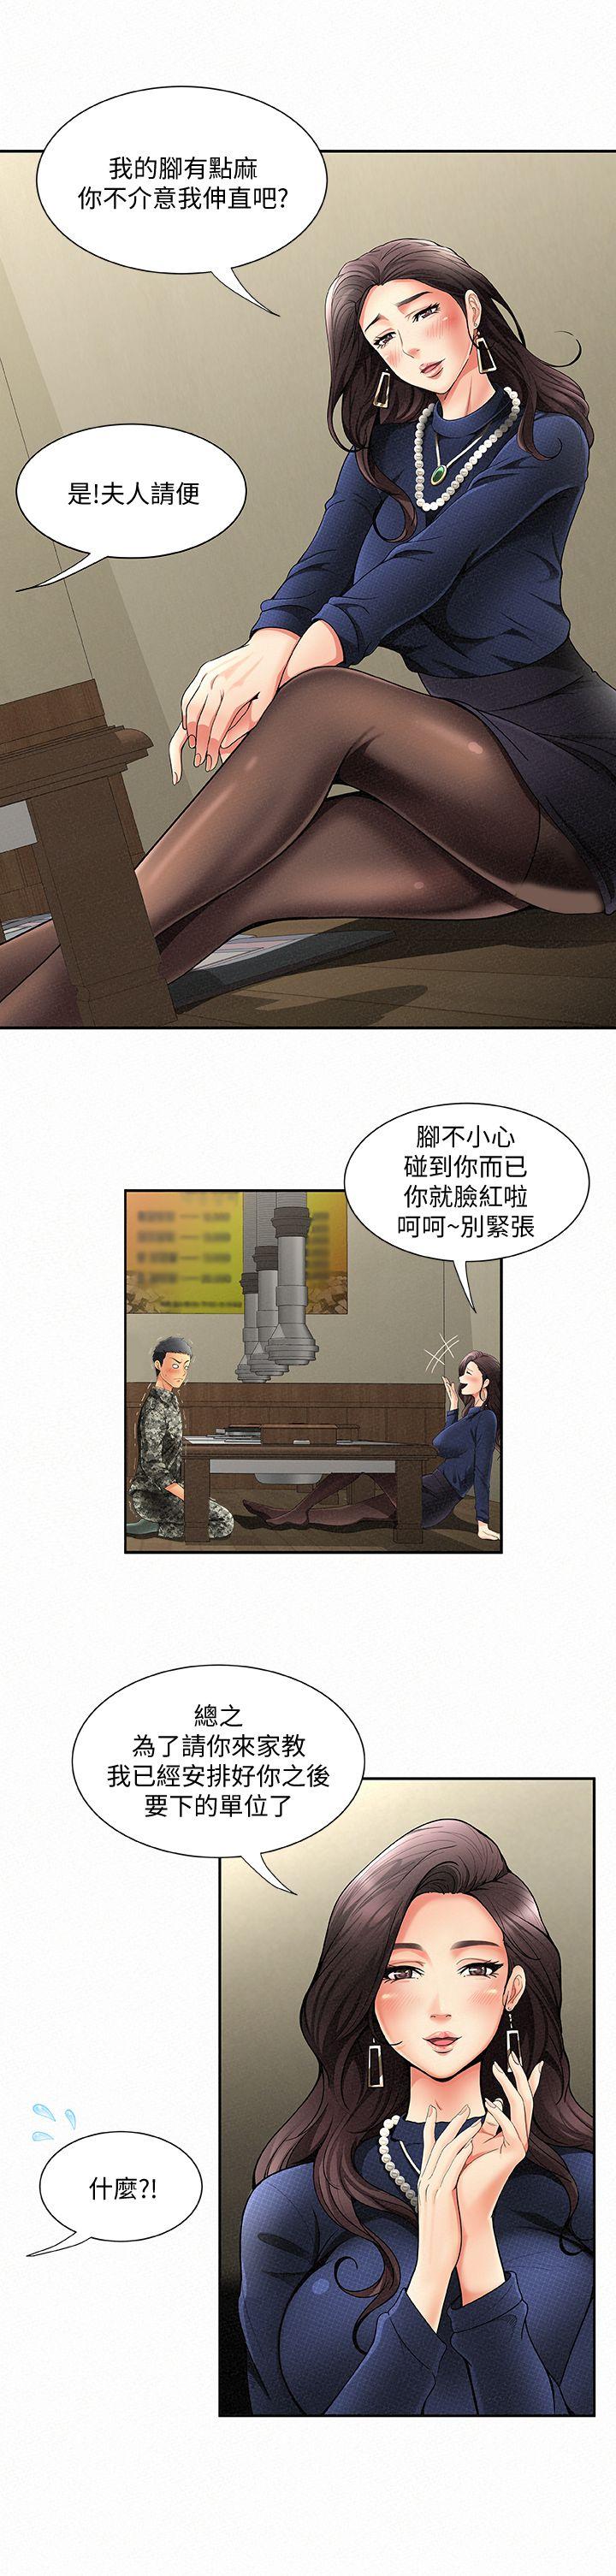 韩国污漫画 報告夫人 第1话-给大头兵的爽缺 15